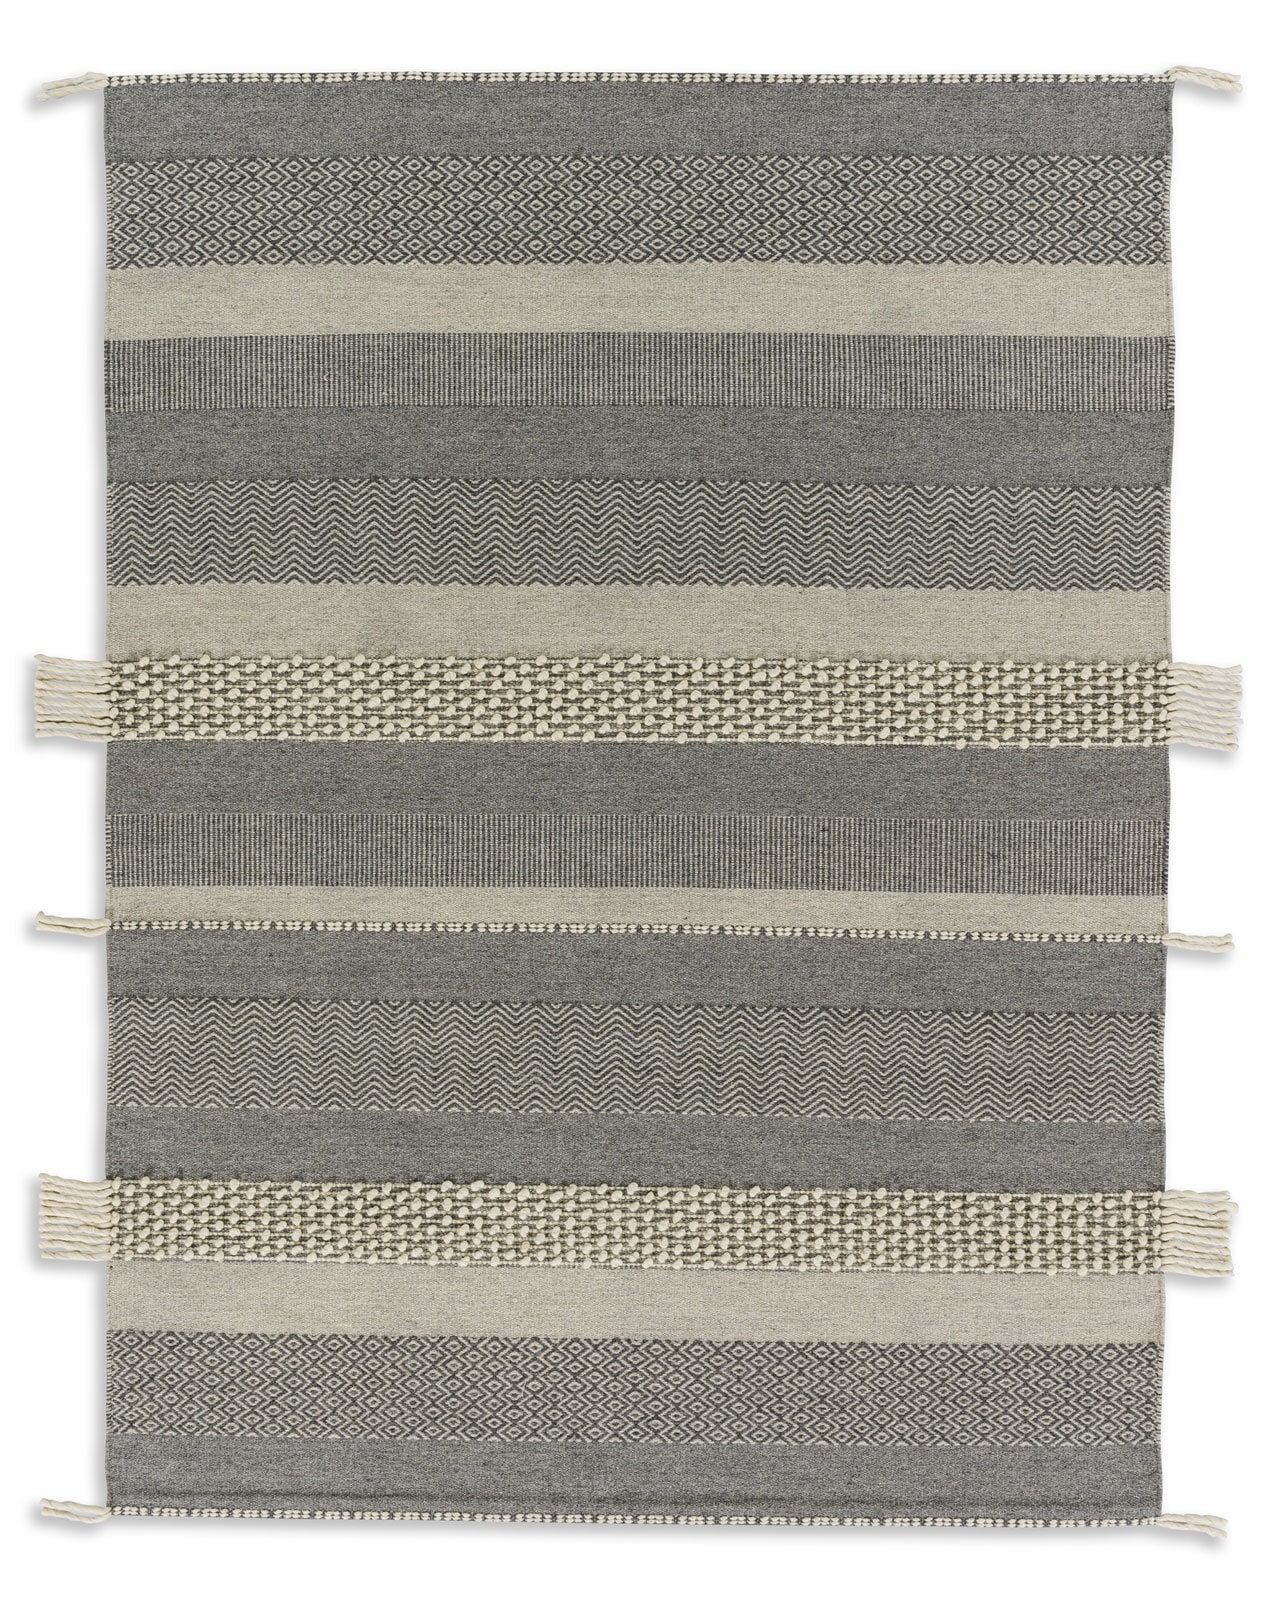 SCHÖNER WOHNEN-Kollektion Teppich BOTANA STREIFEN 200 x 300 cm beige/grau